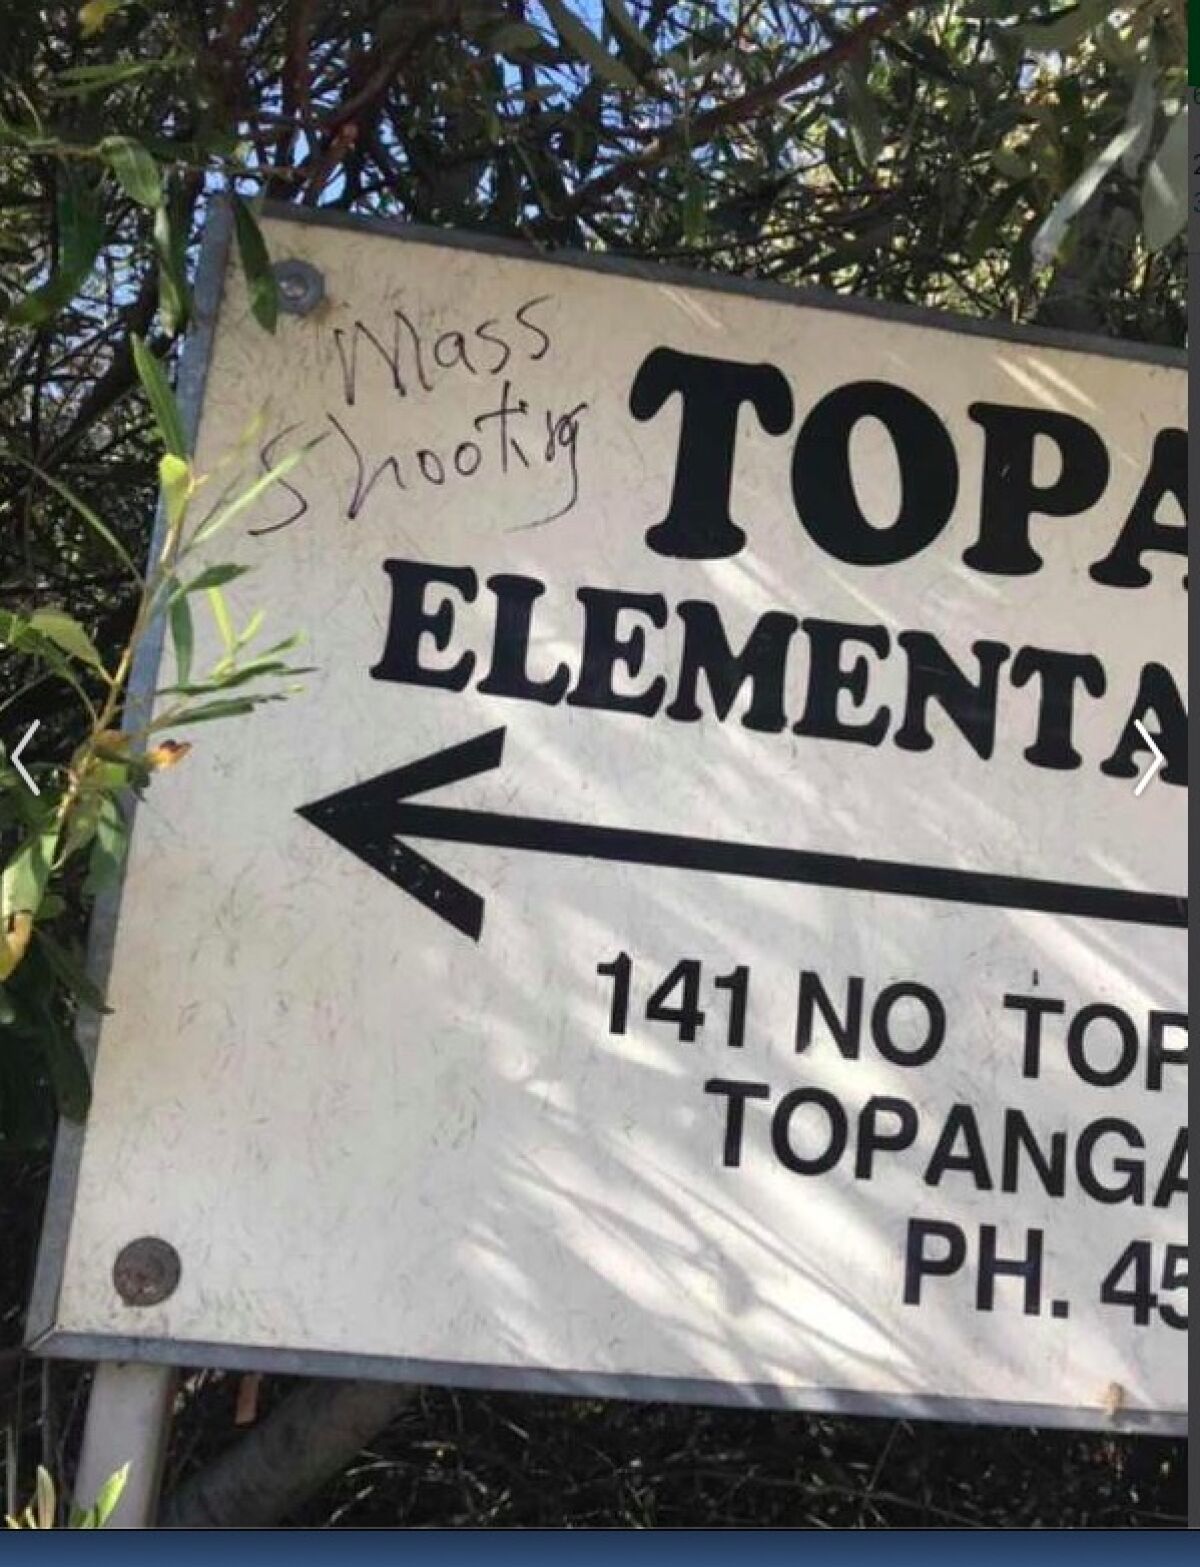 Graffiti on a sign near Topanga Elementary